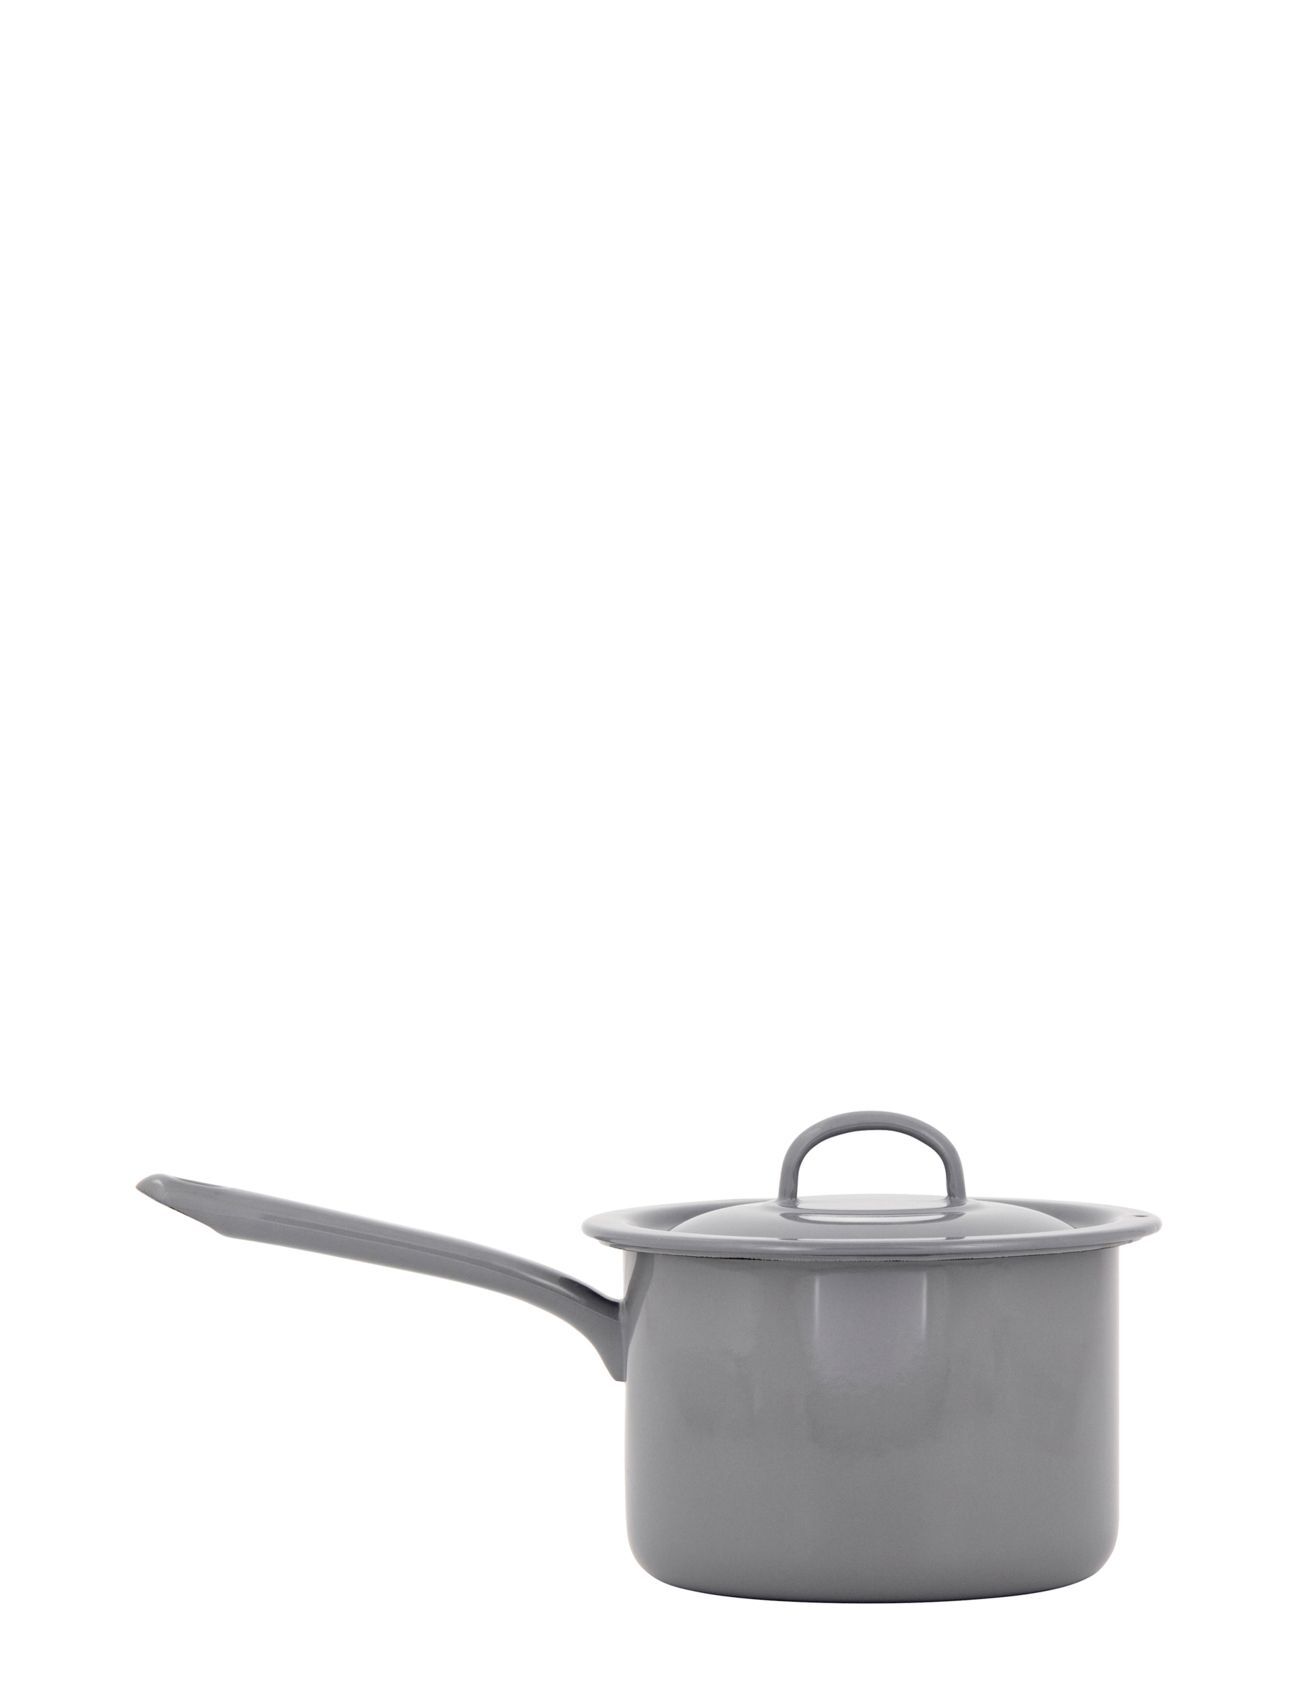 Kockums Jernverk Pot With Long Handle And Lid, 2,3L Home Kitchen Pots & Pans Saucepans Grå Kockums Jernverk